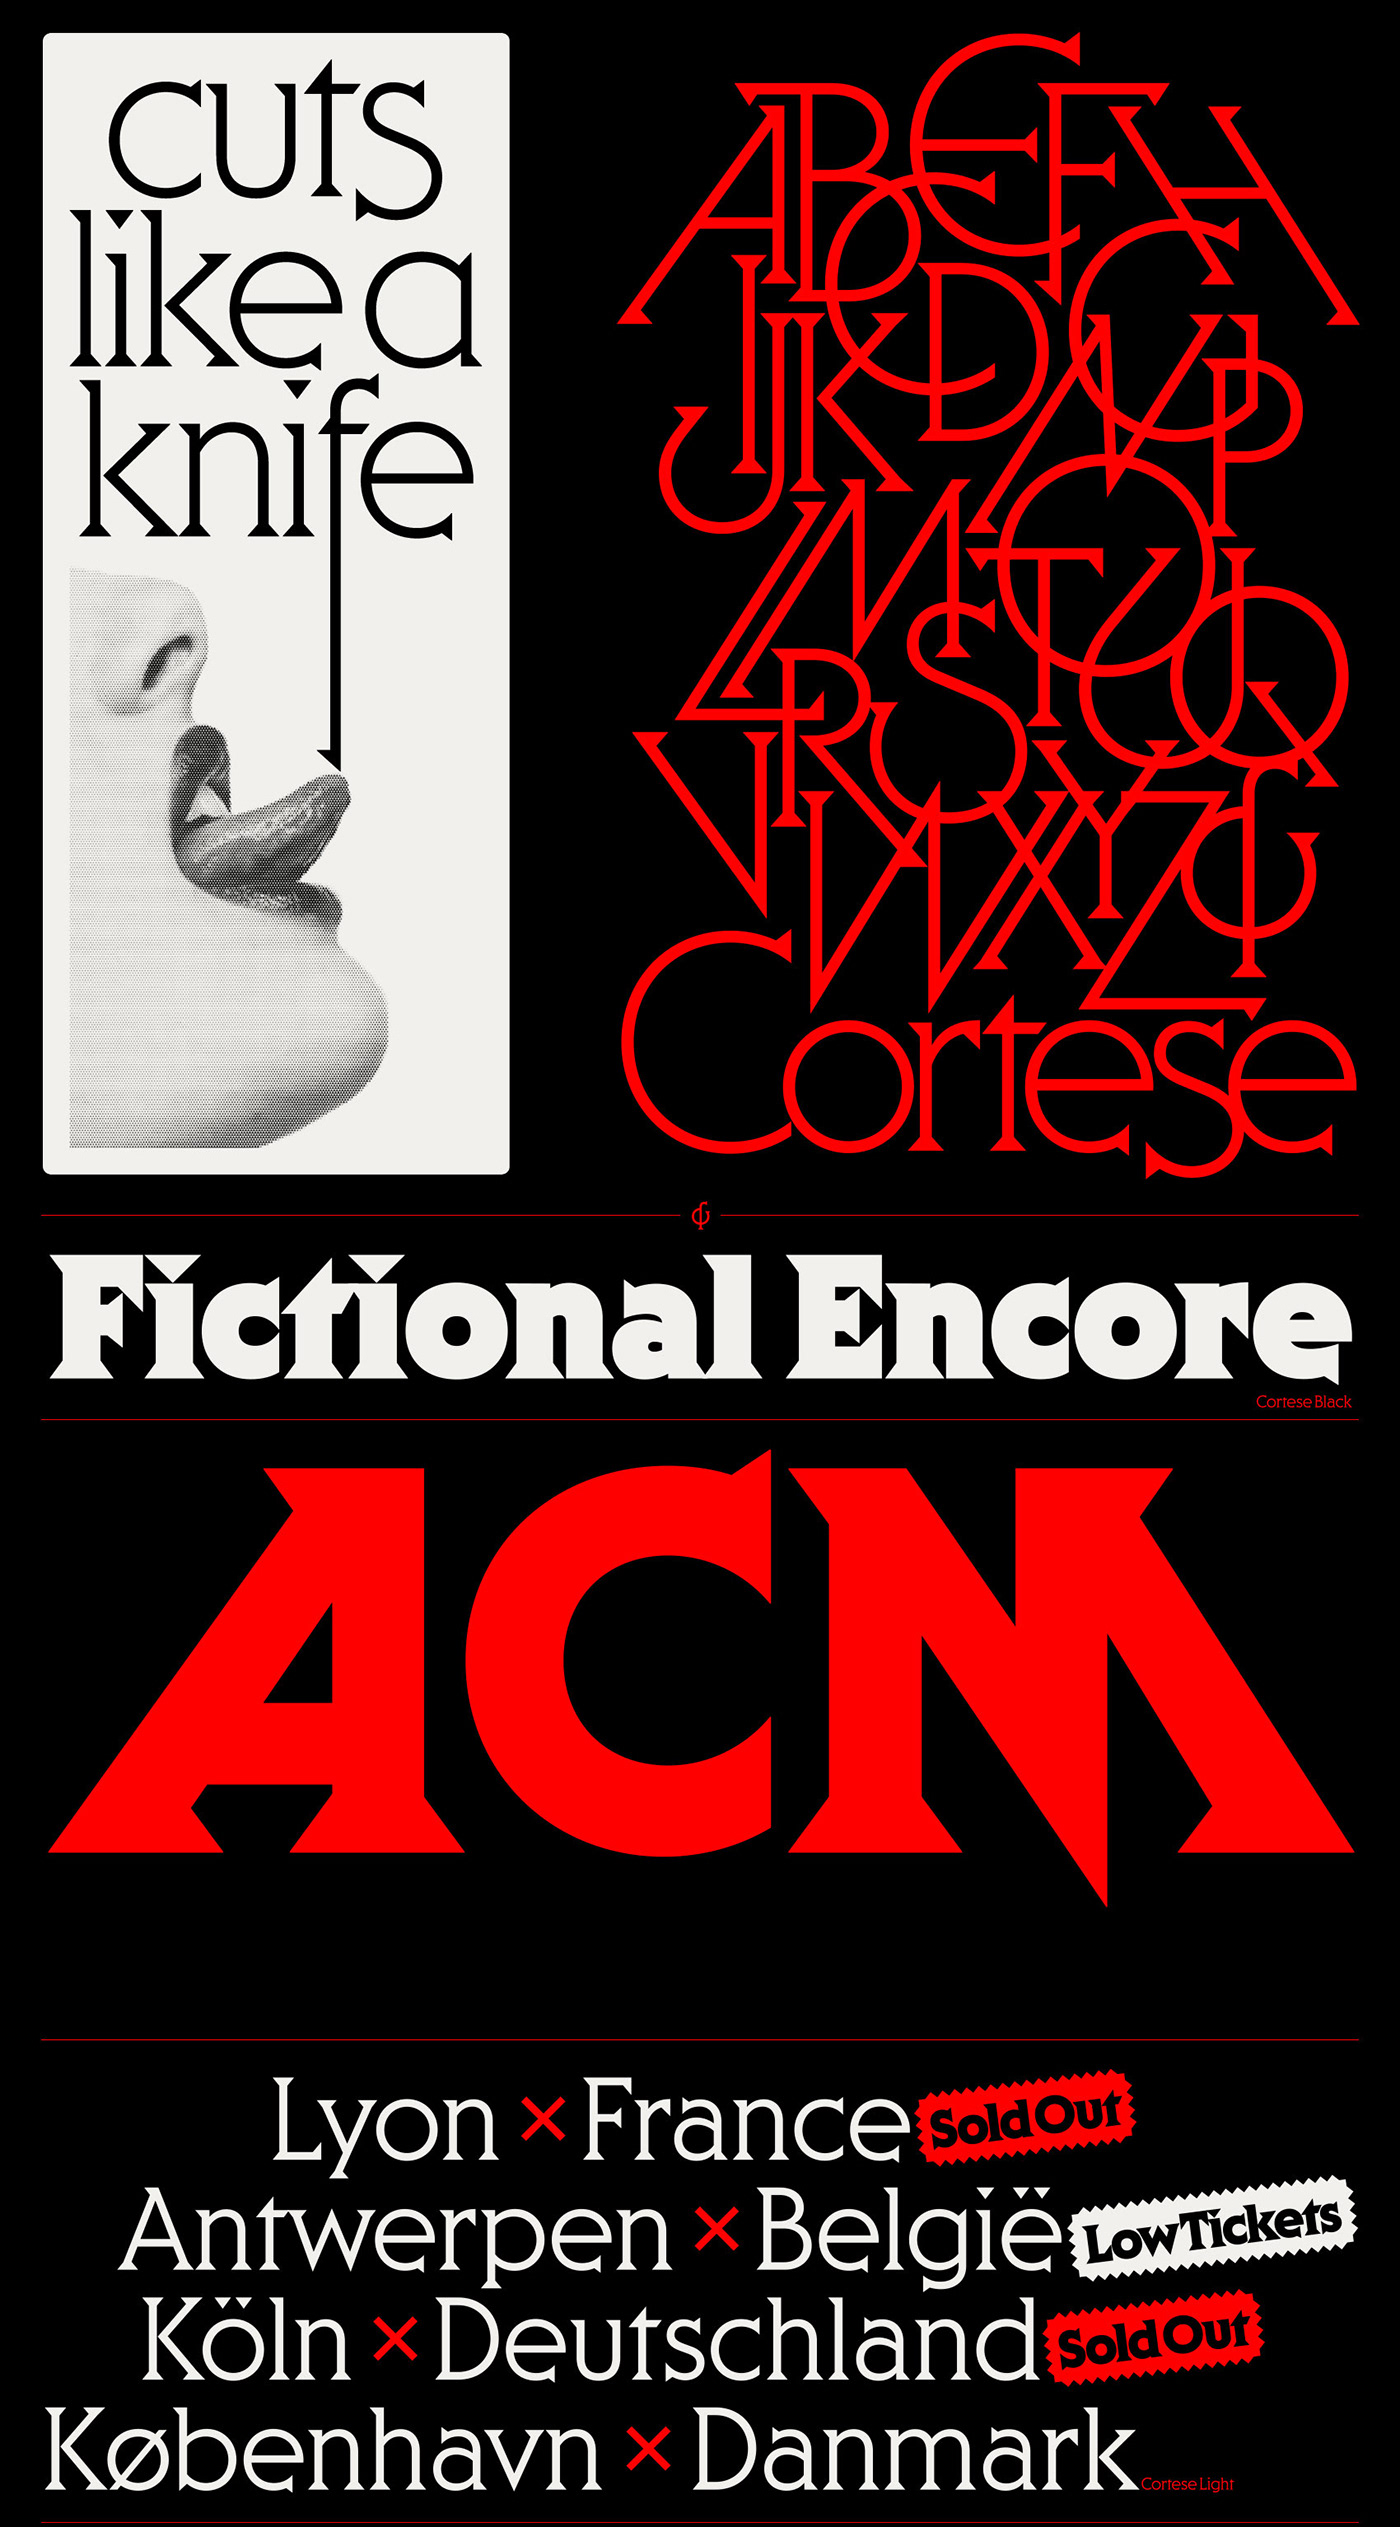 display font display type professional Retro seventies Typeface type vintage font Mark van Leeuwen